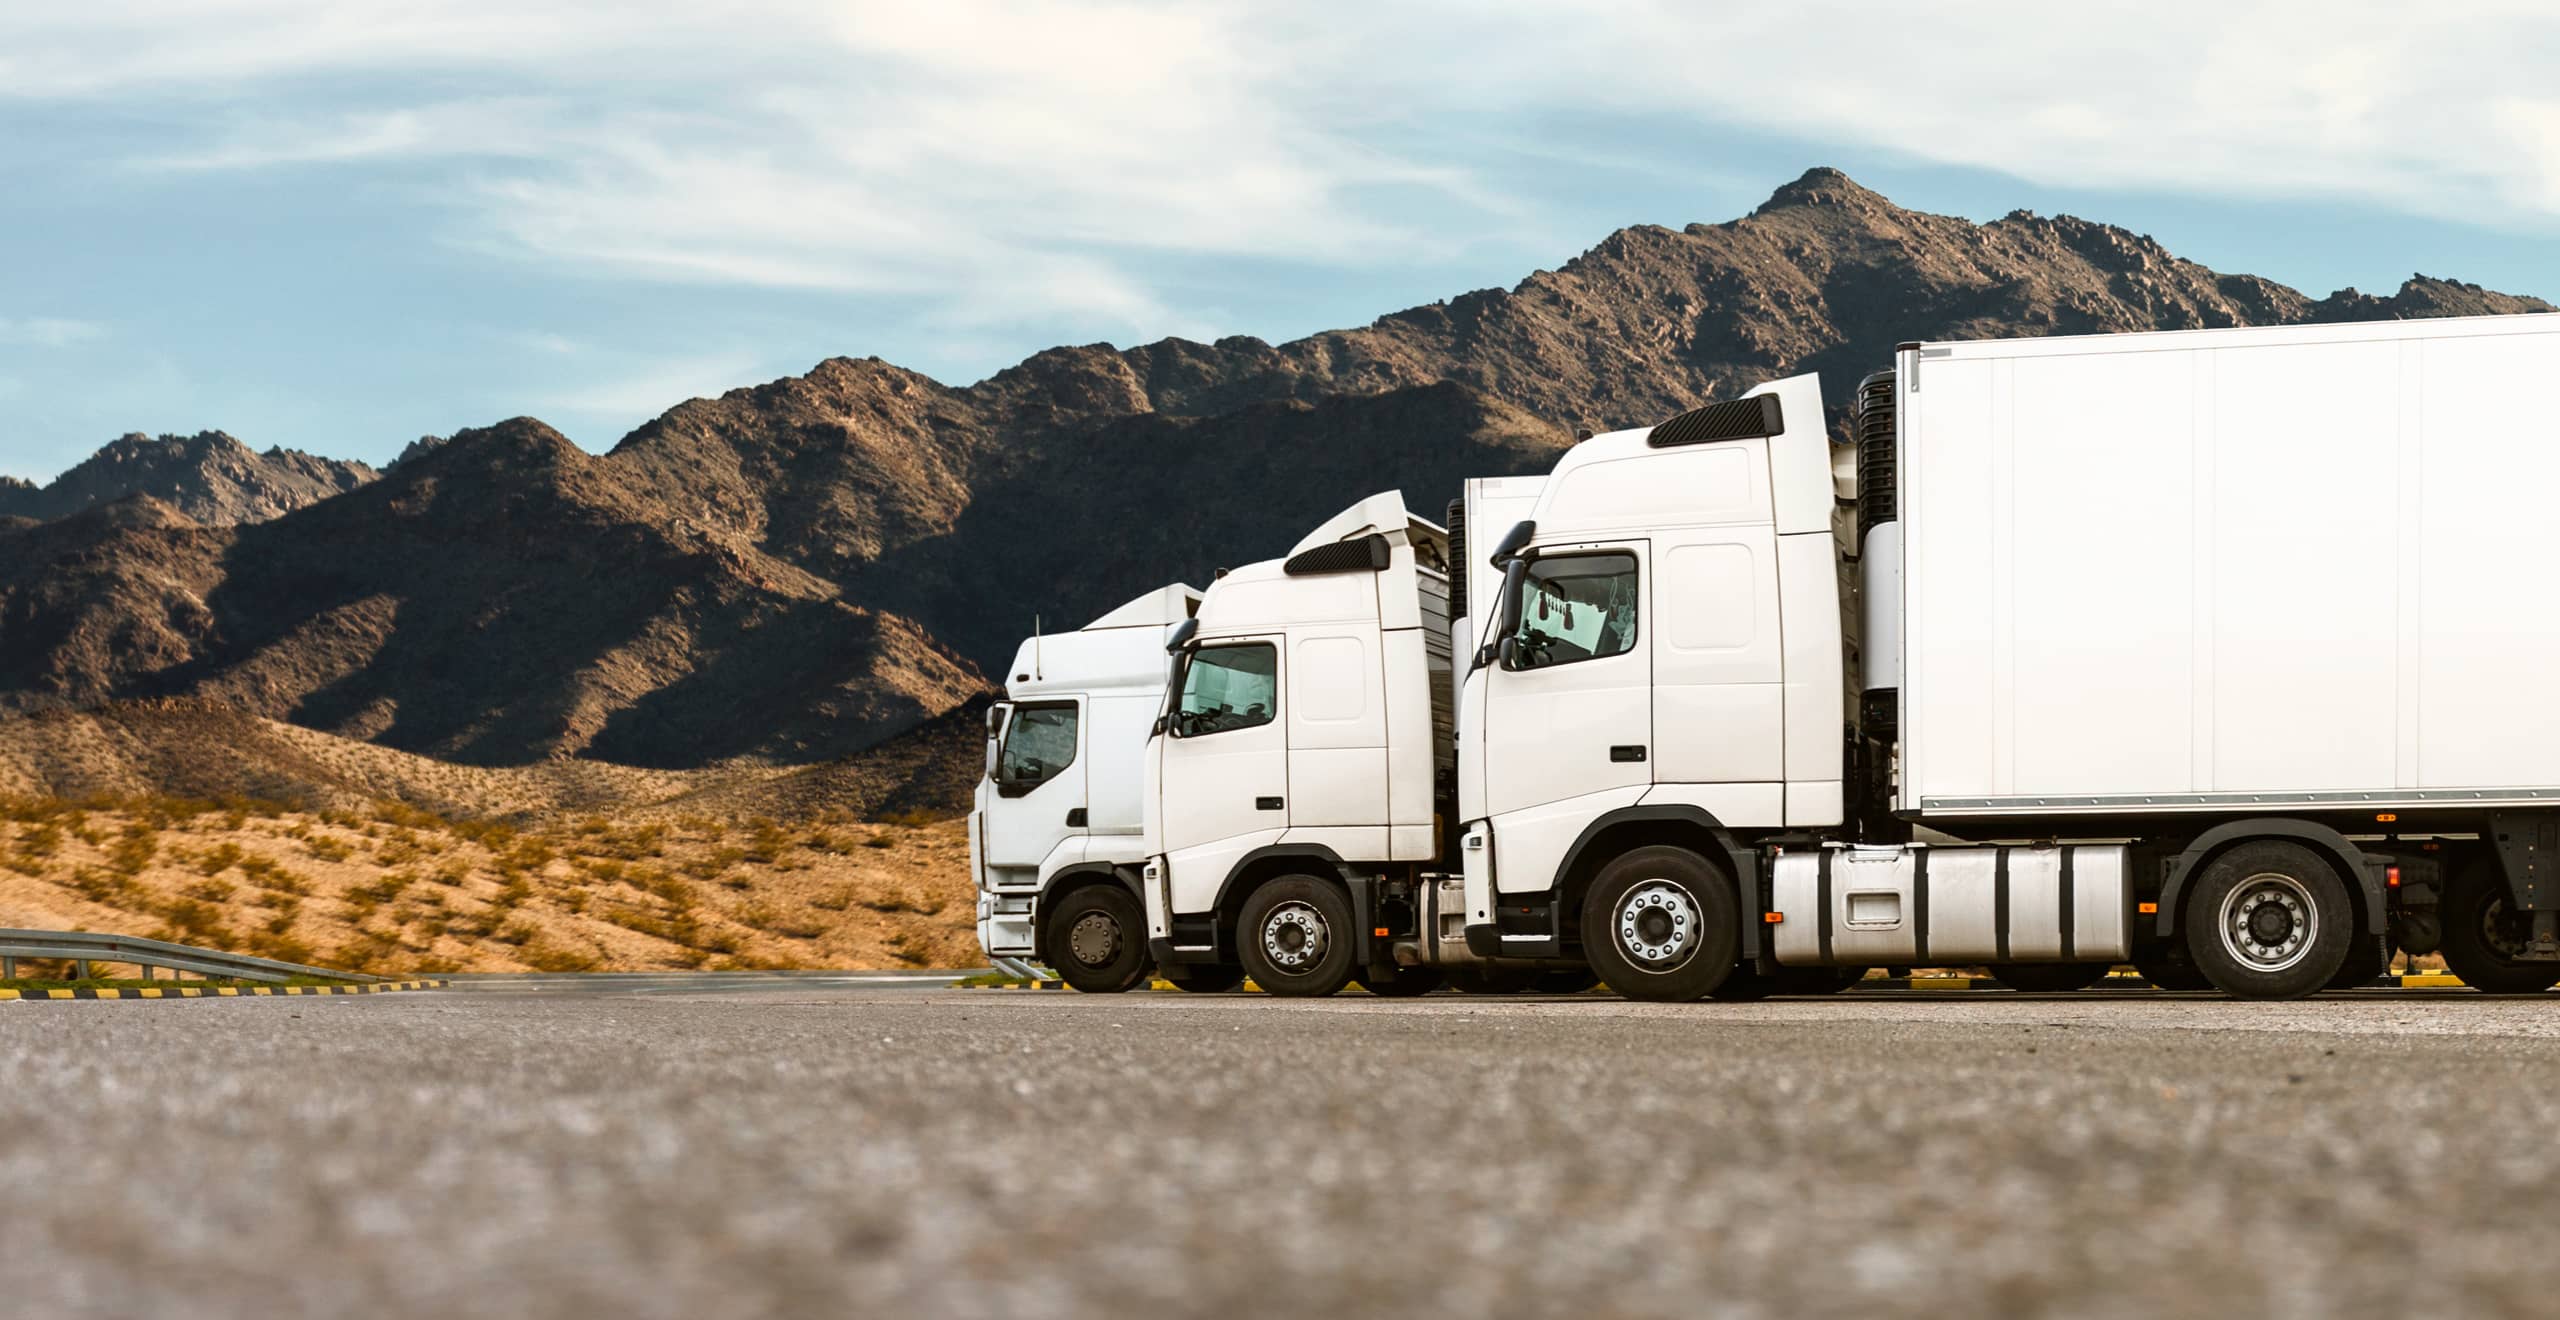 Estensione della durata dei pneumatici Goodyear per camion attraverso servizi di rigenerazione e riscolpitura